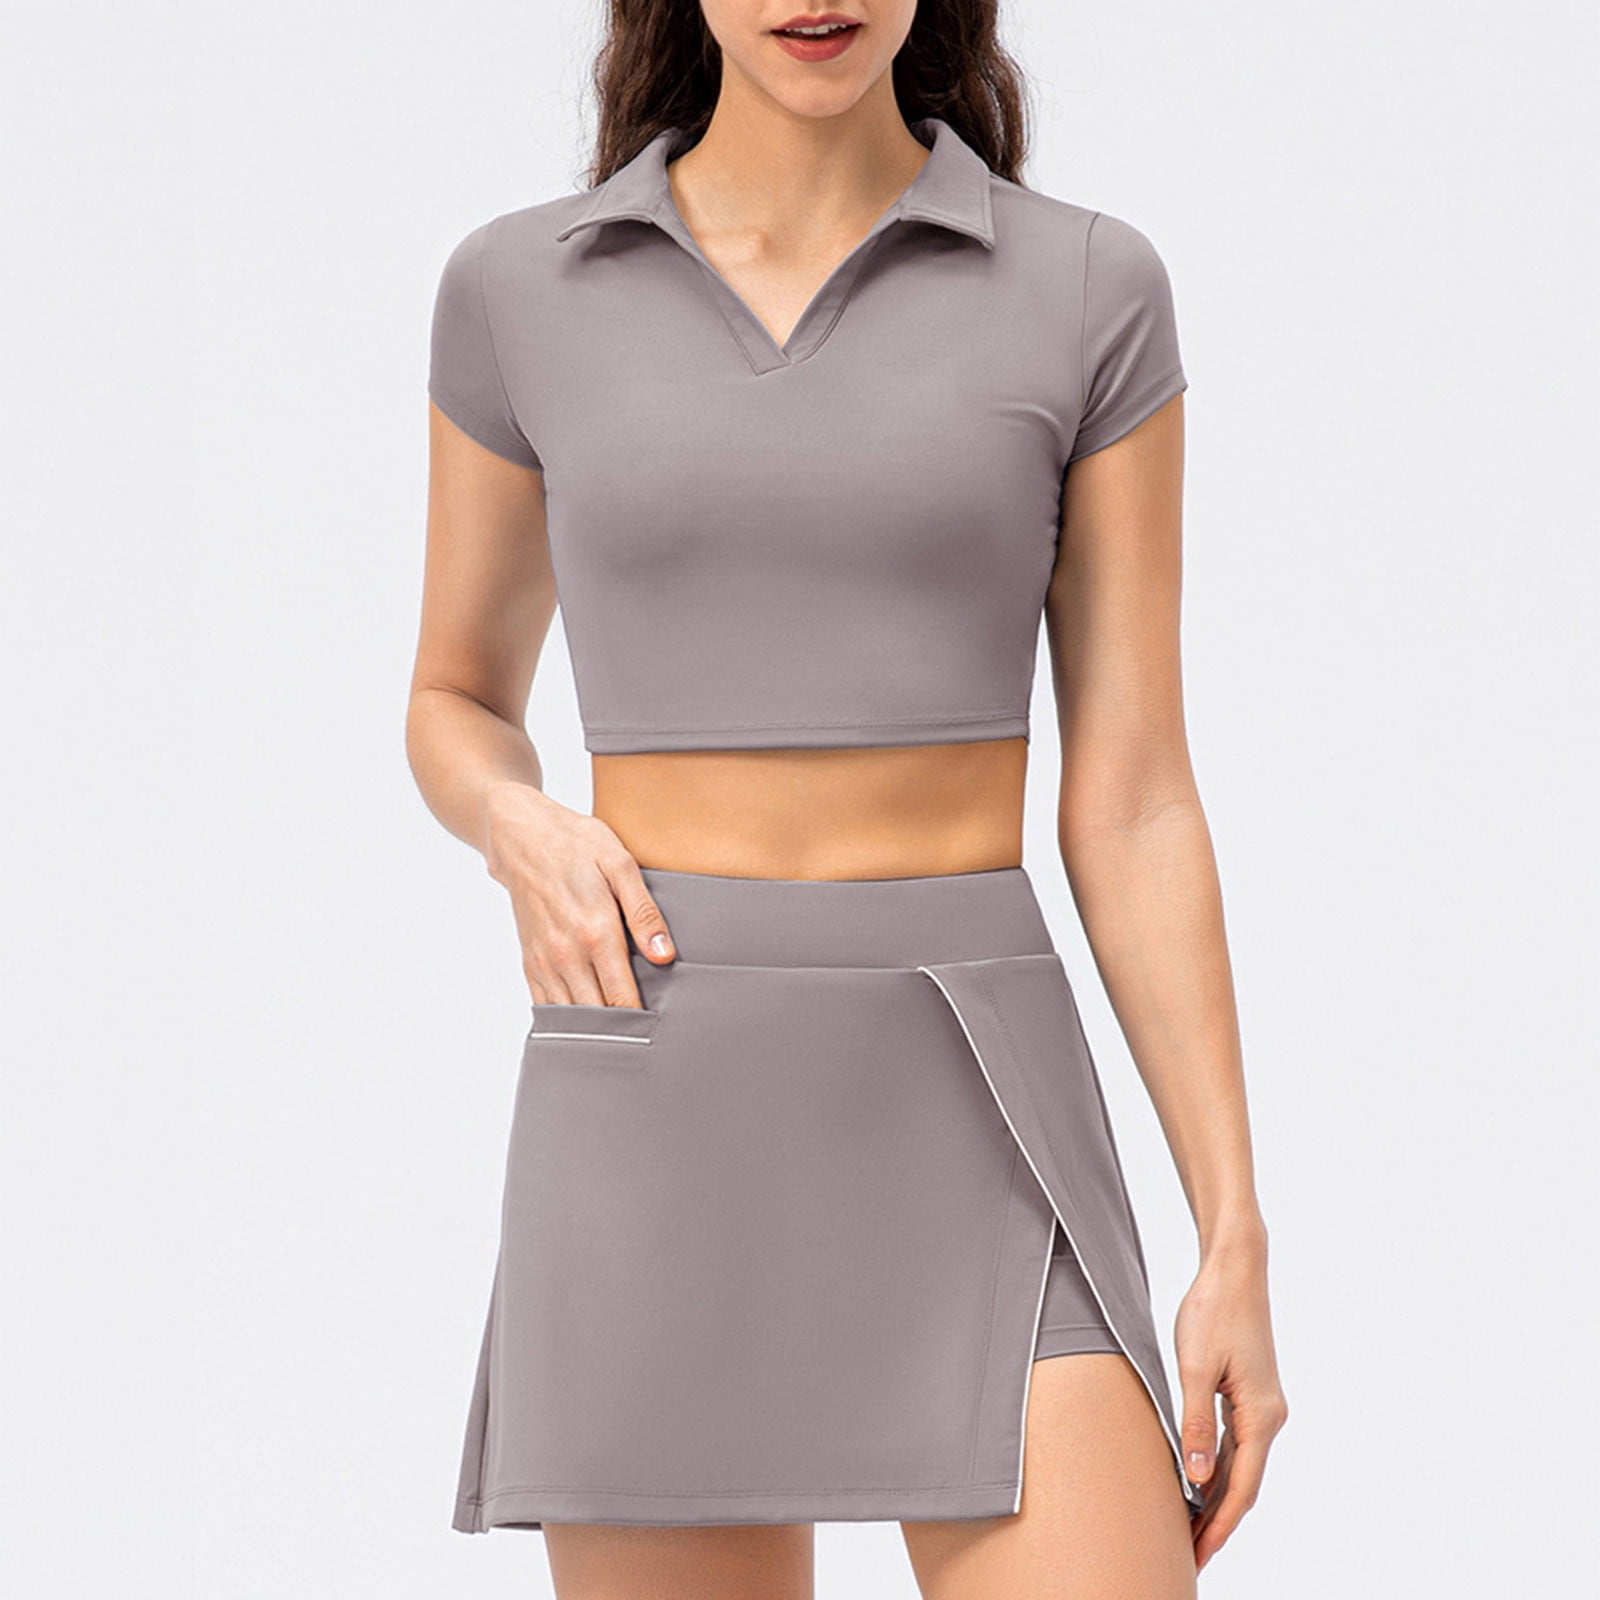 JWZUY Tennis Skirt Sets Women 2 Piece Outfits High Waist Golf